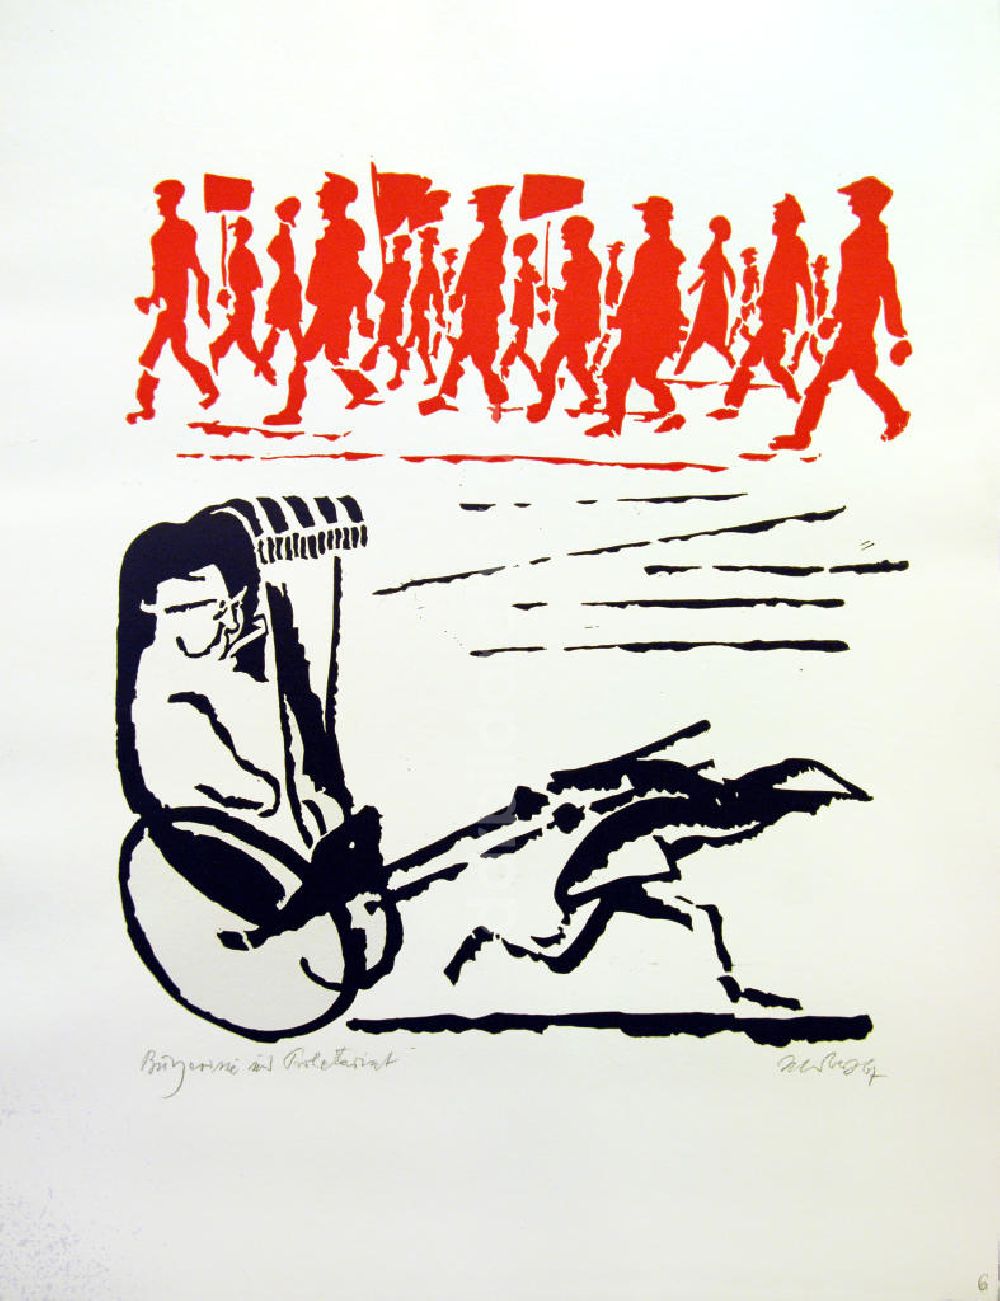 Berlin: Grafik von Herbert Sandberg Motiv 6 aus dem Zyklus Bilder zum Kommunistischen Manifest aus dem Jahr 1967